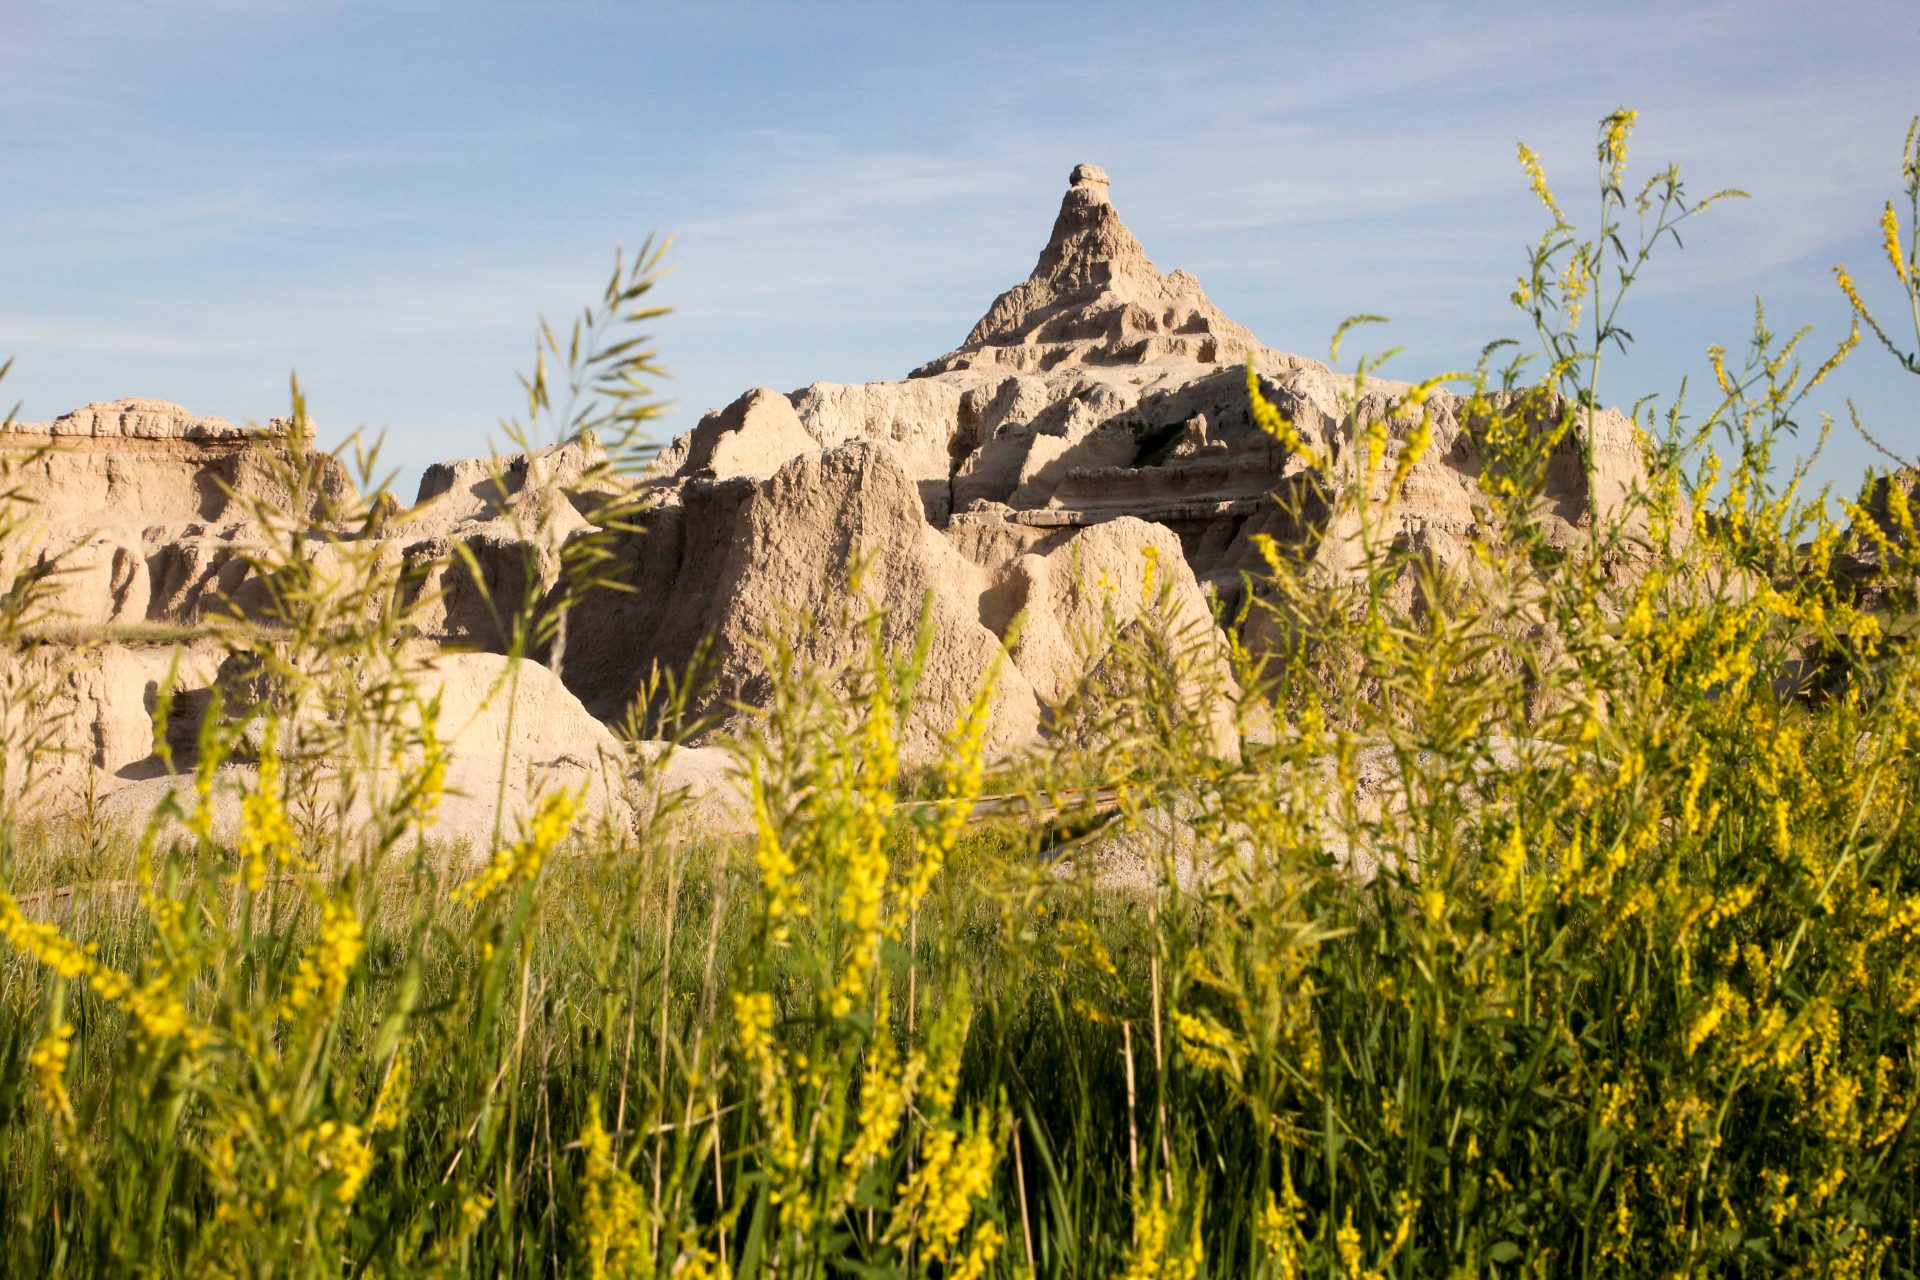 Beyond Mount Rushmore: Southwestern South Dakota